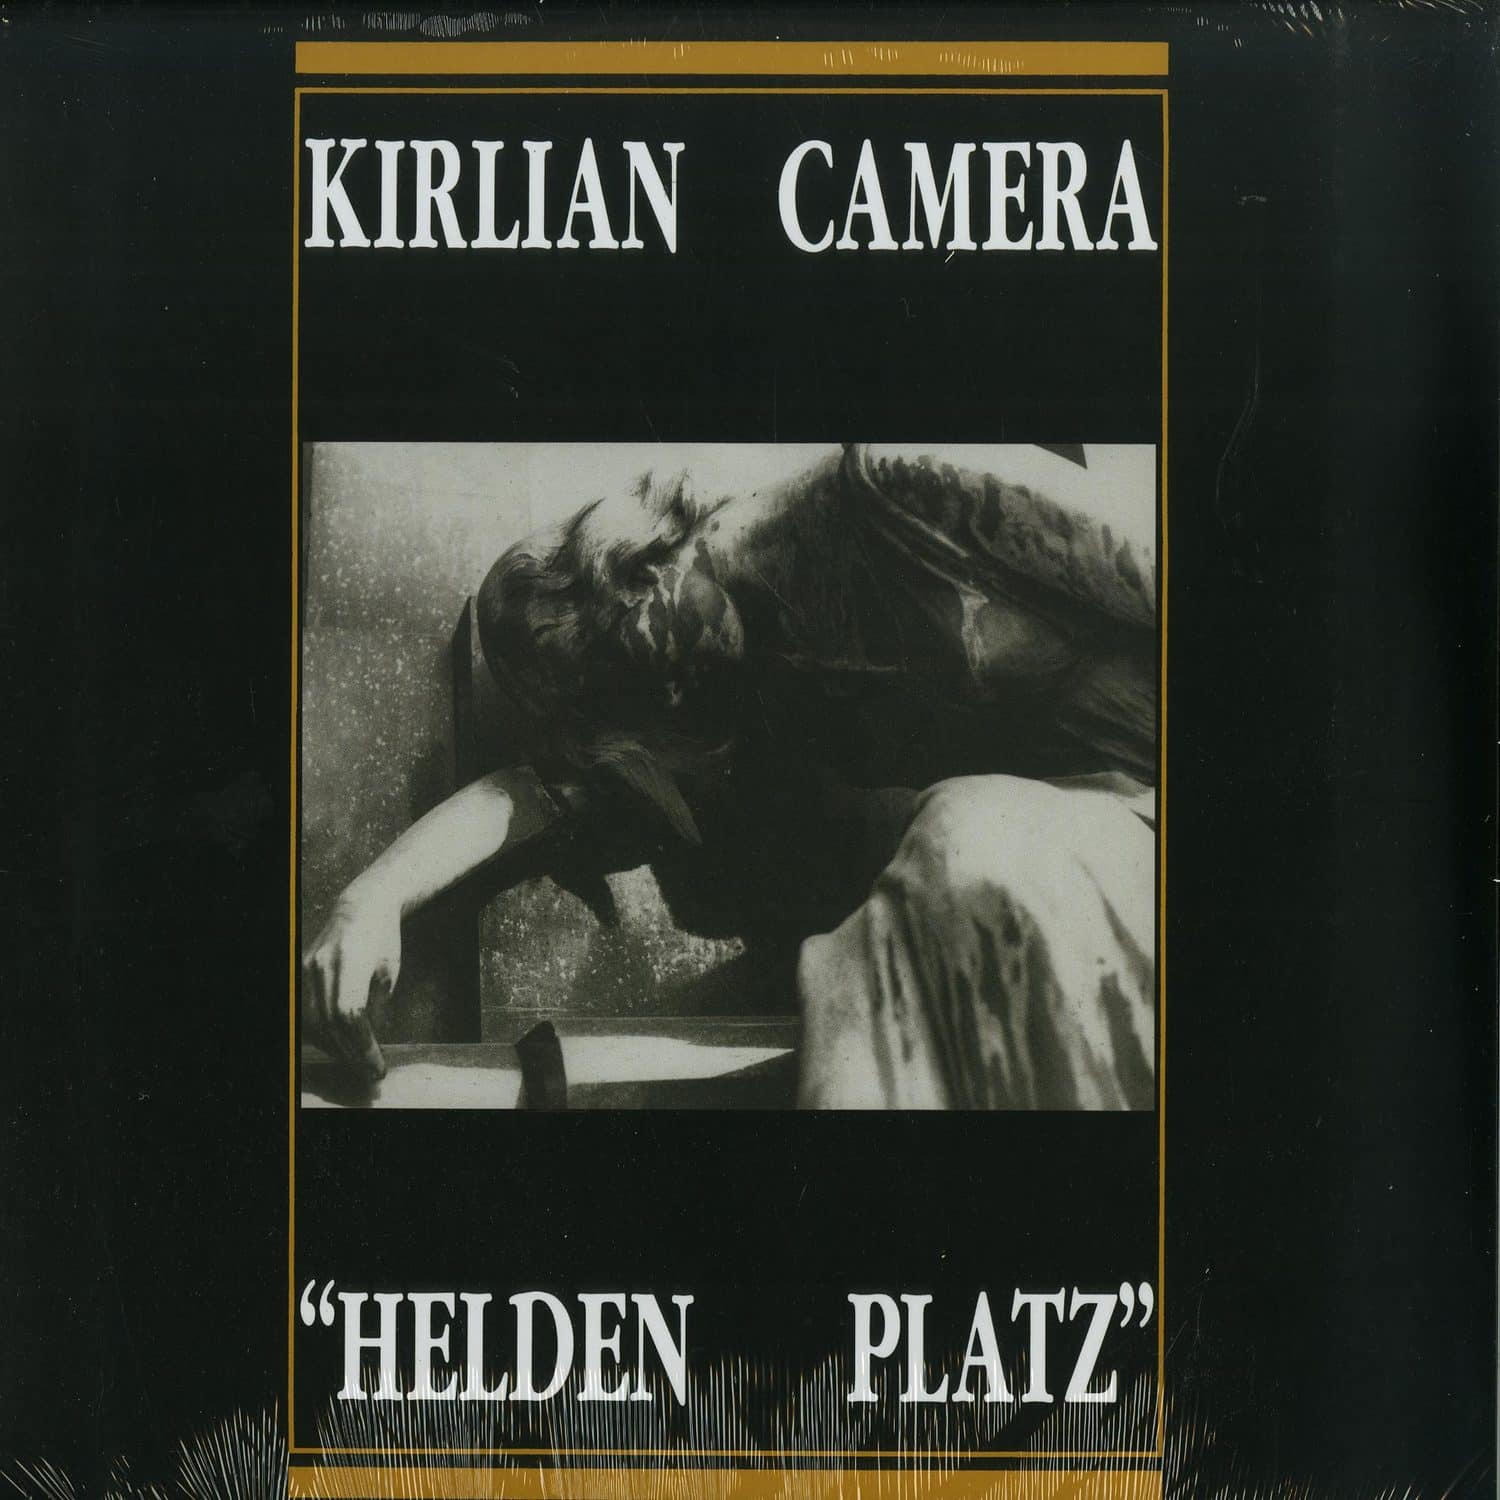 Kirlian Camera - HELDEN PLATZ